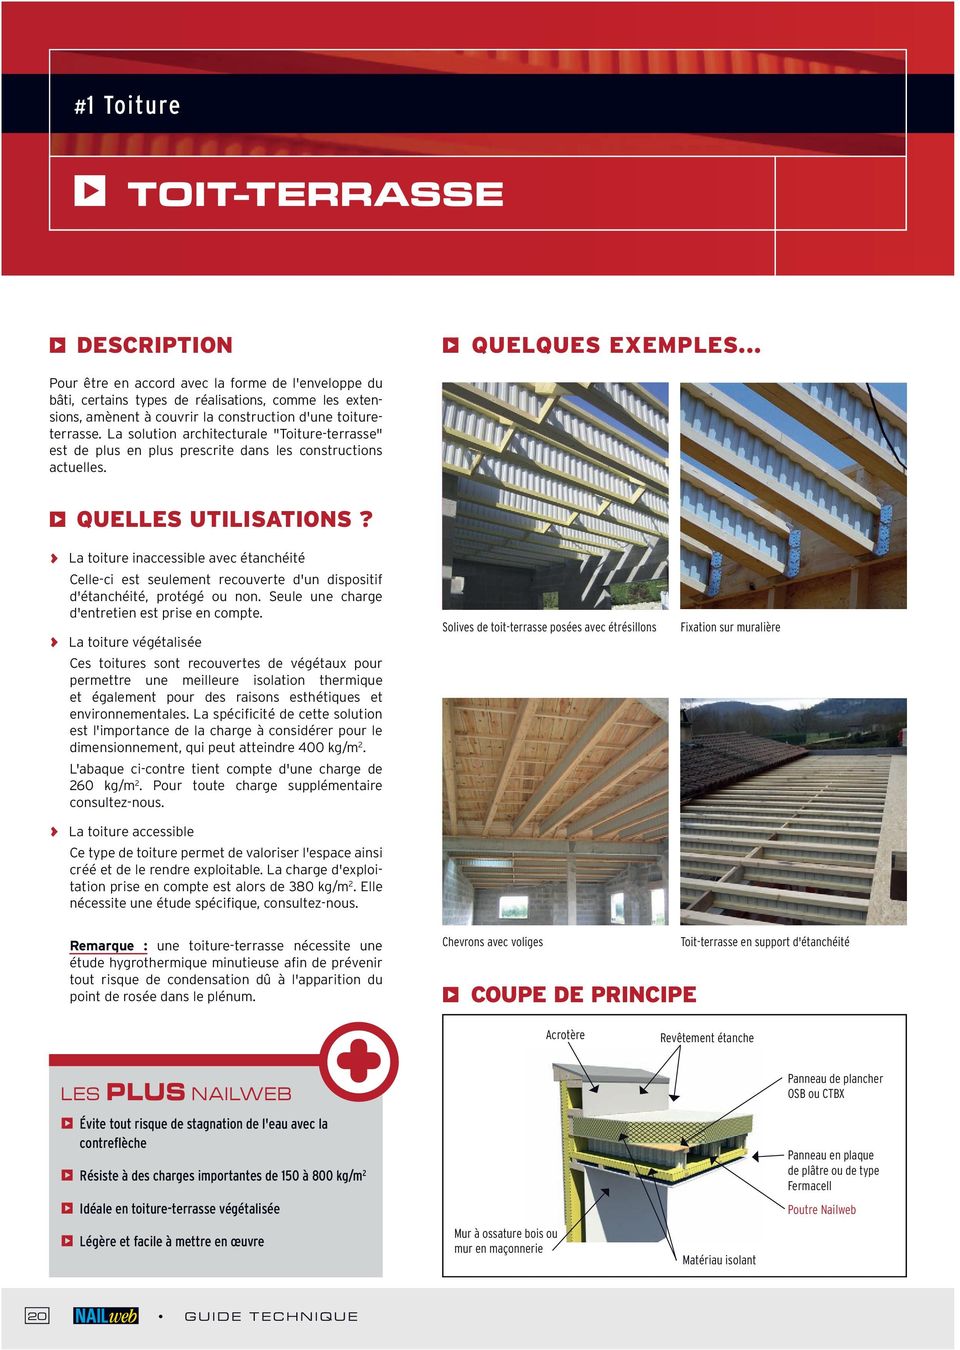 La solution architecturale "Toiture-terrasse" est de plus en plus prescrite dans les constructions actuelles. & Quelles utilisations?